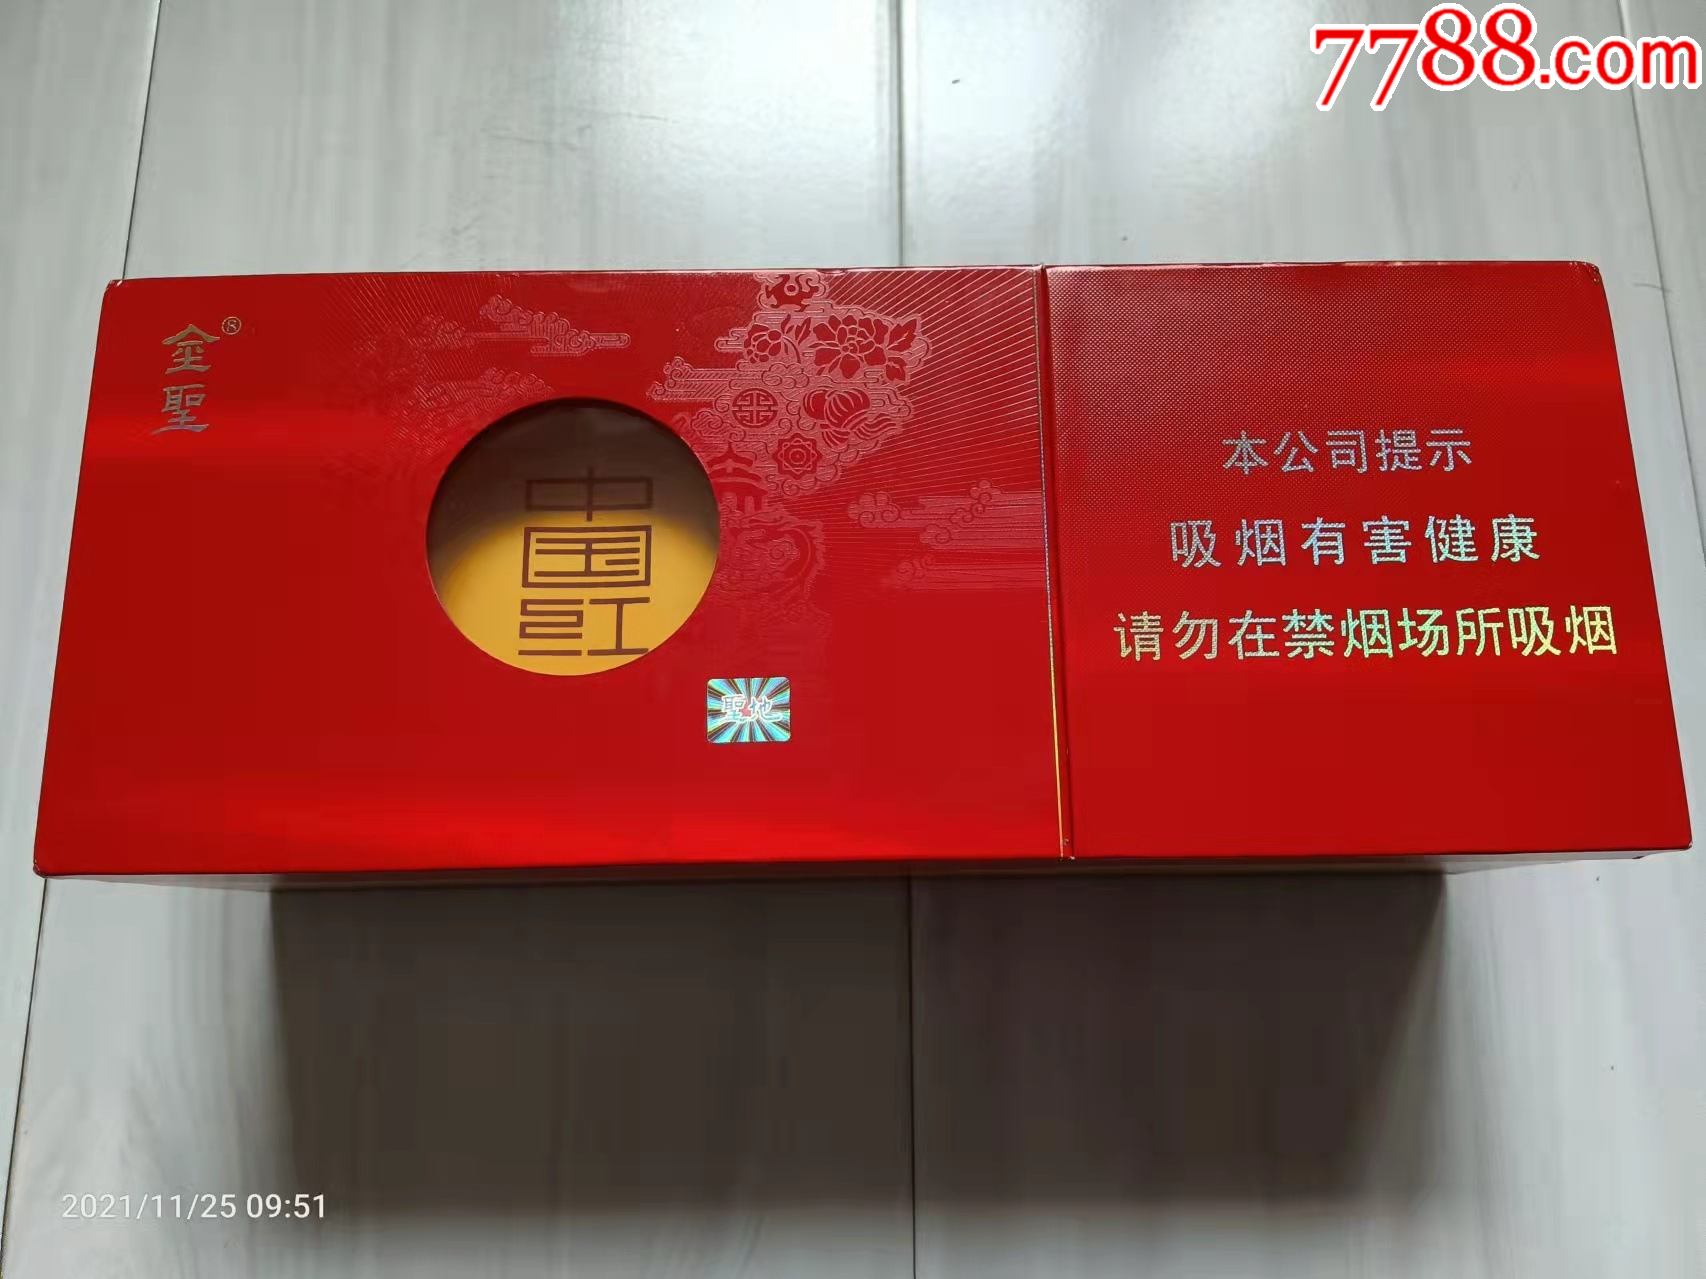 金圣圣地中国红寿福禄喜条盒烟标含一空盒74mm硬盒160支装江西